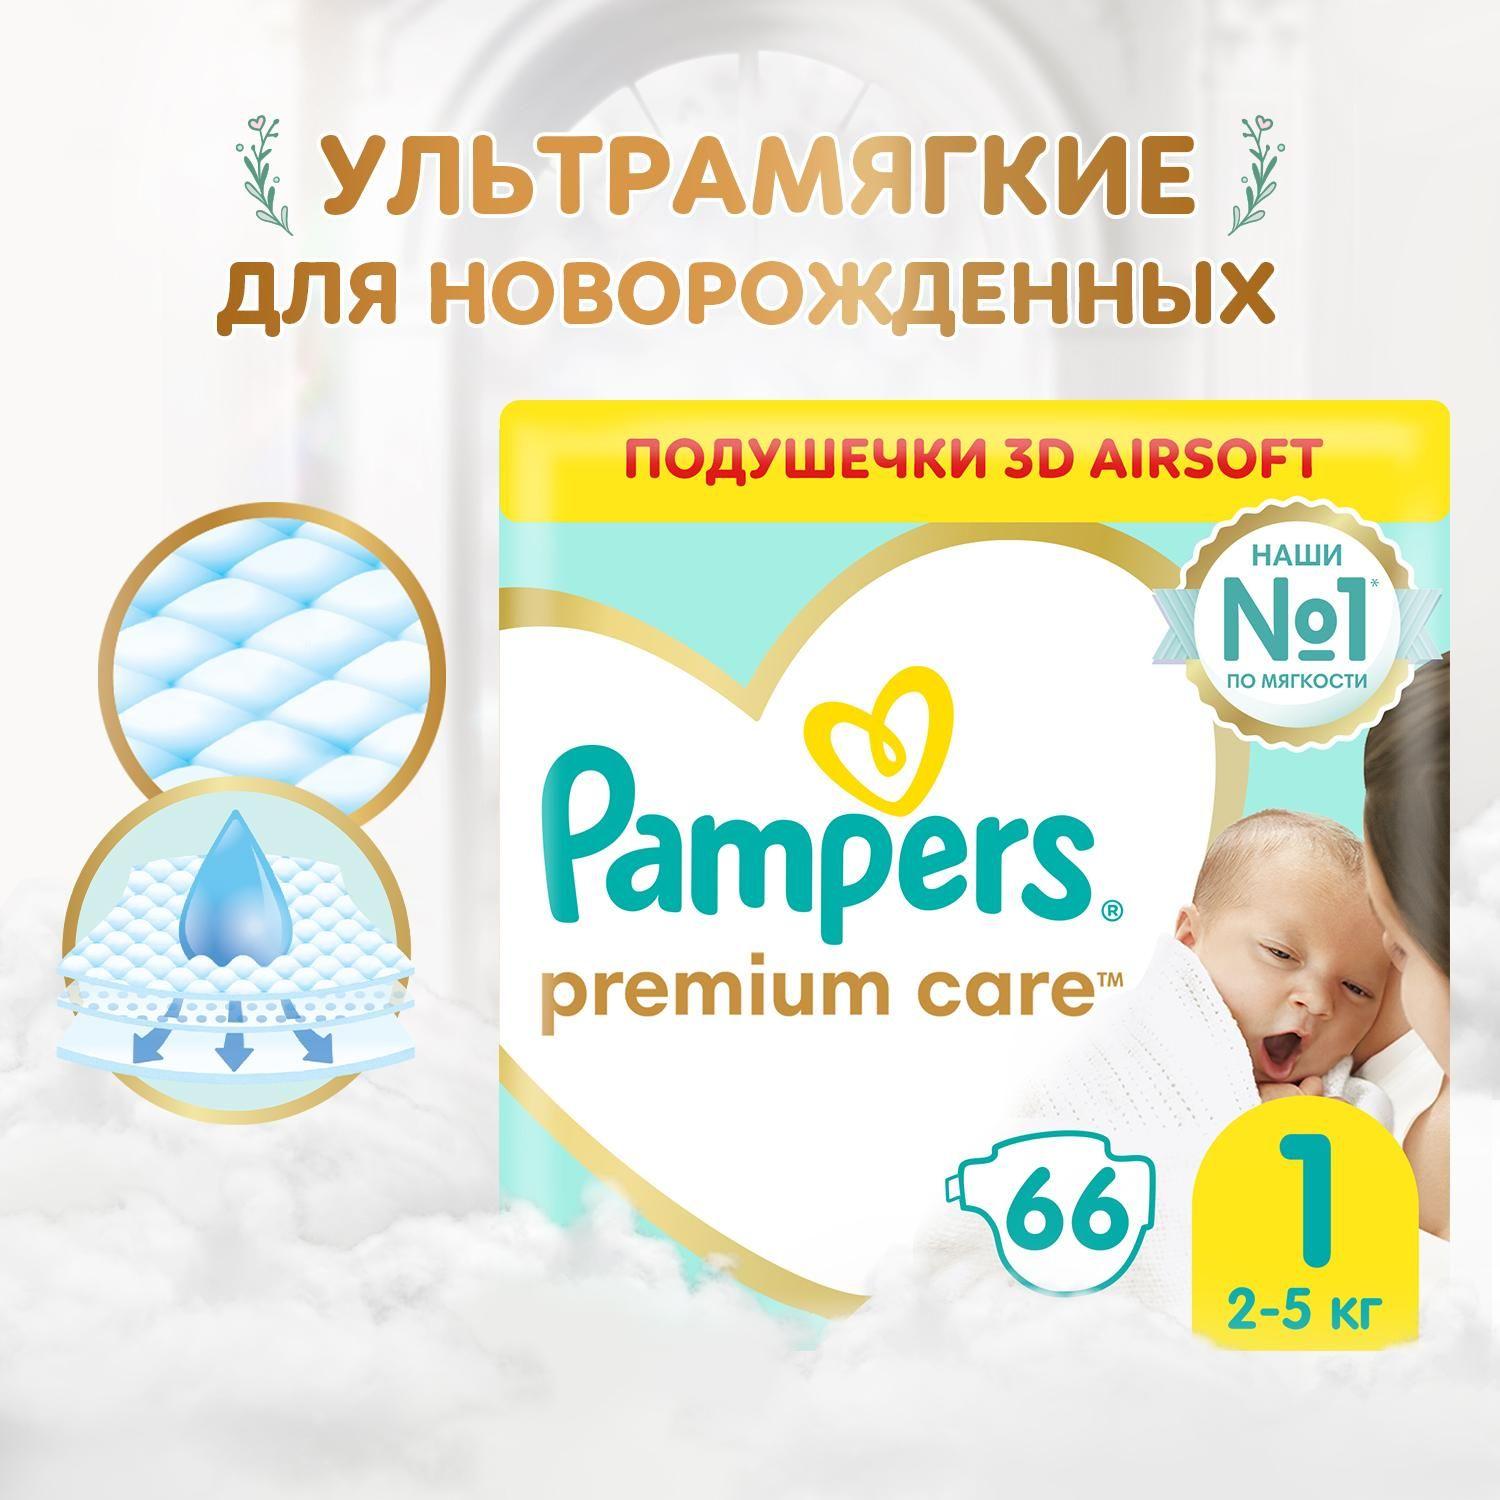 Подгузники для новорожденных Pampers Premium Care 1 размер, 2-5 кг, 66 шт, ультрамягкие